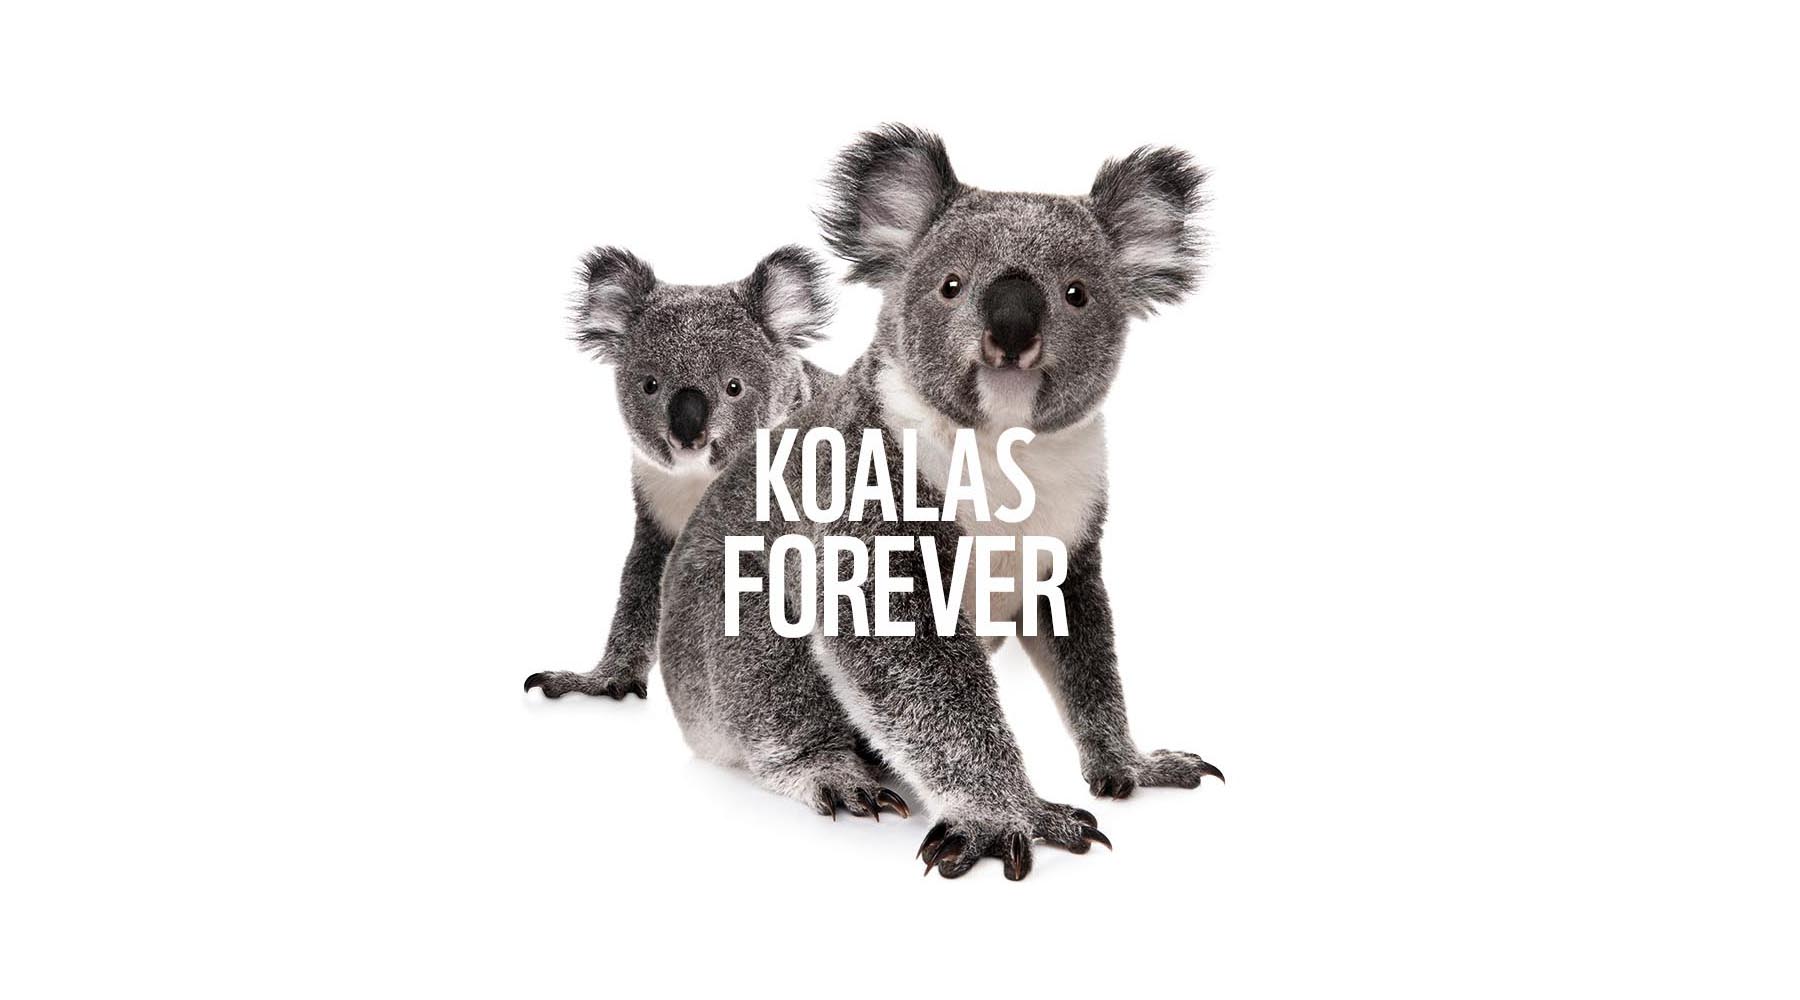 Koalas Forever home banner © WWF-Australia